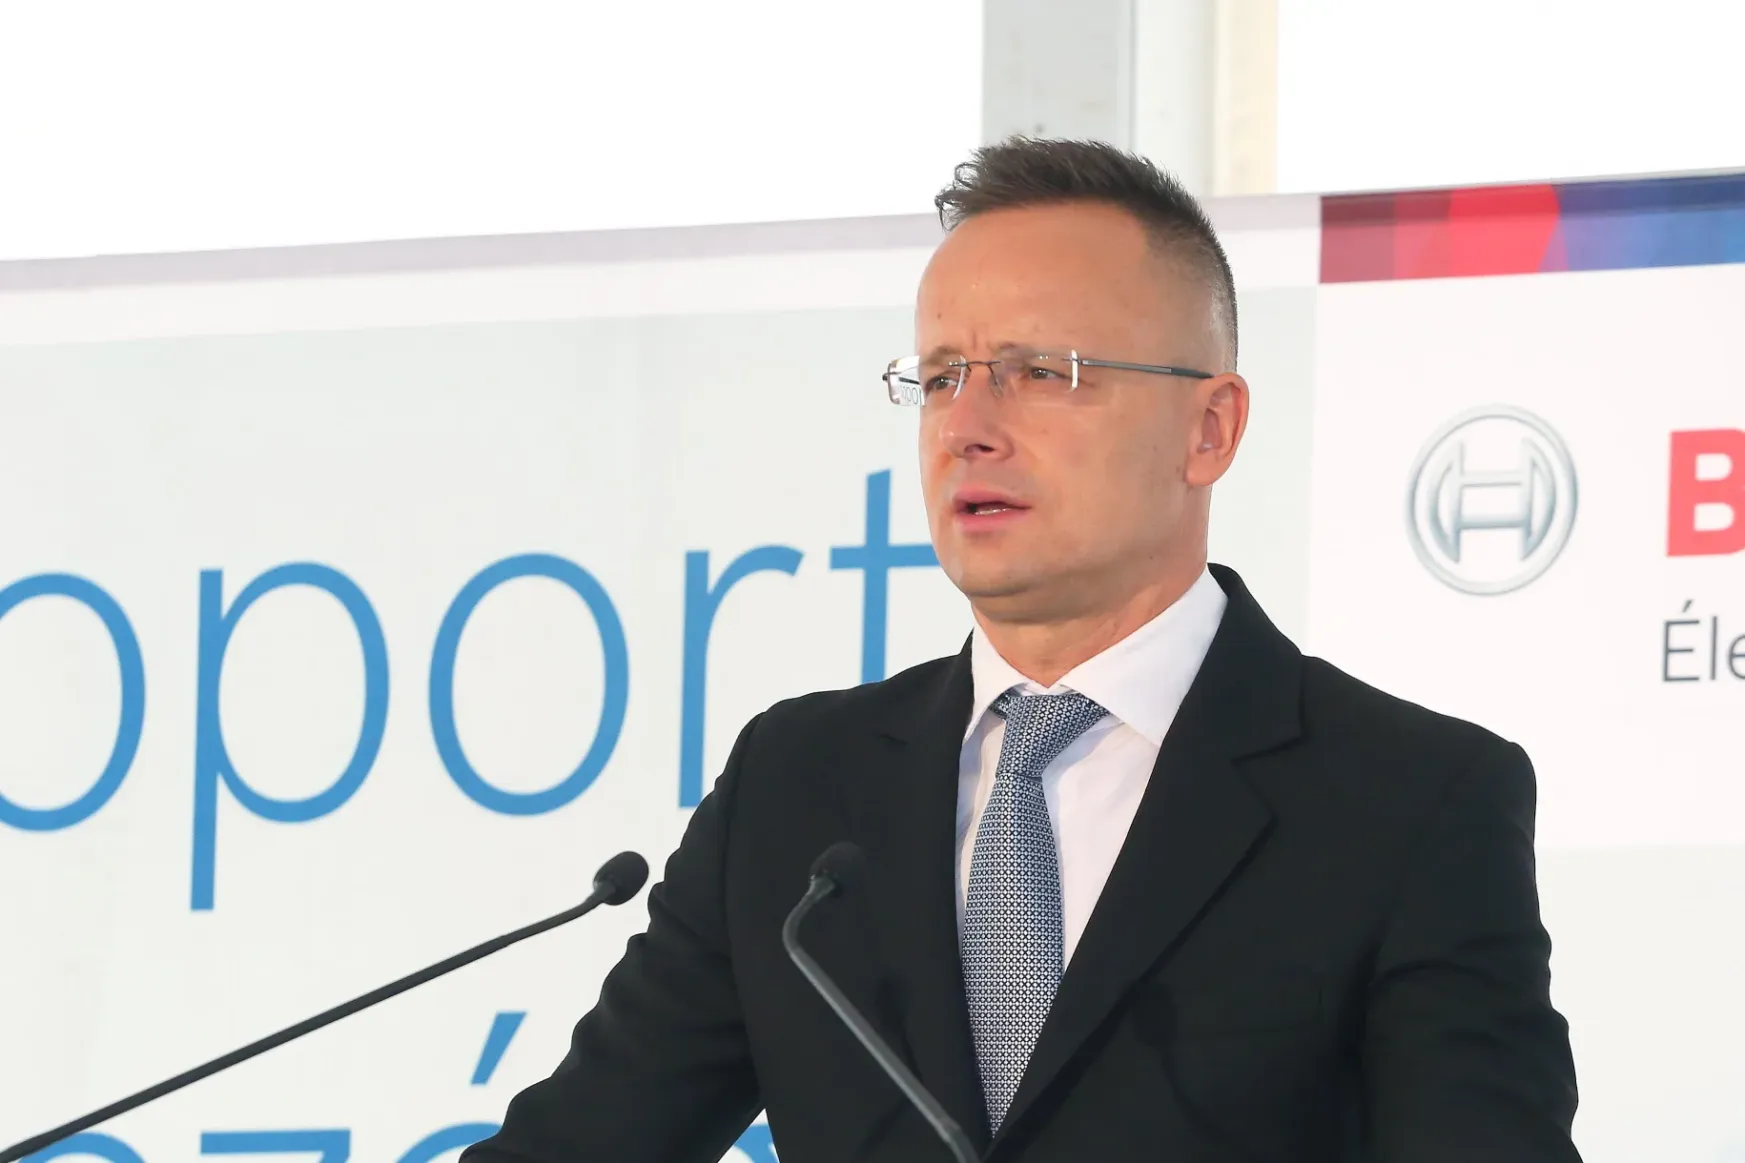 Szijjártó Péter: A Bosch akkumulátorgyártást, logisztikát bővít Miskolcon